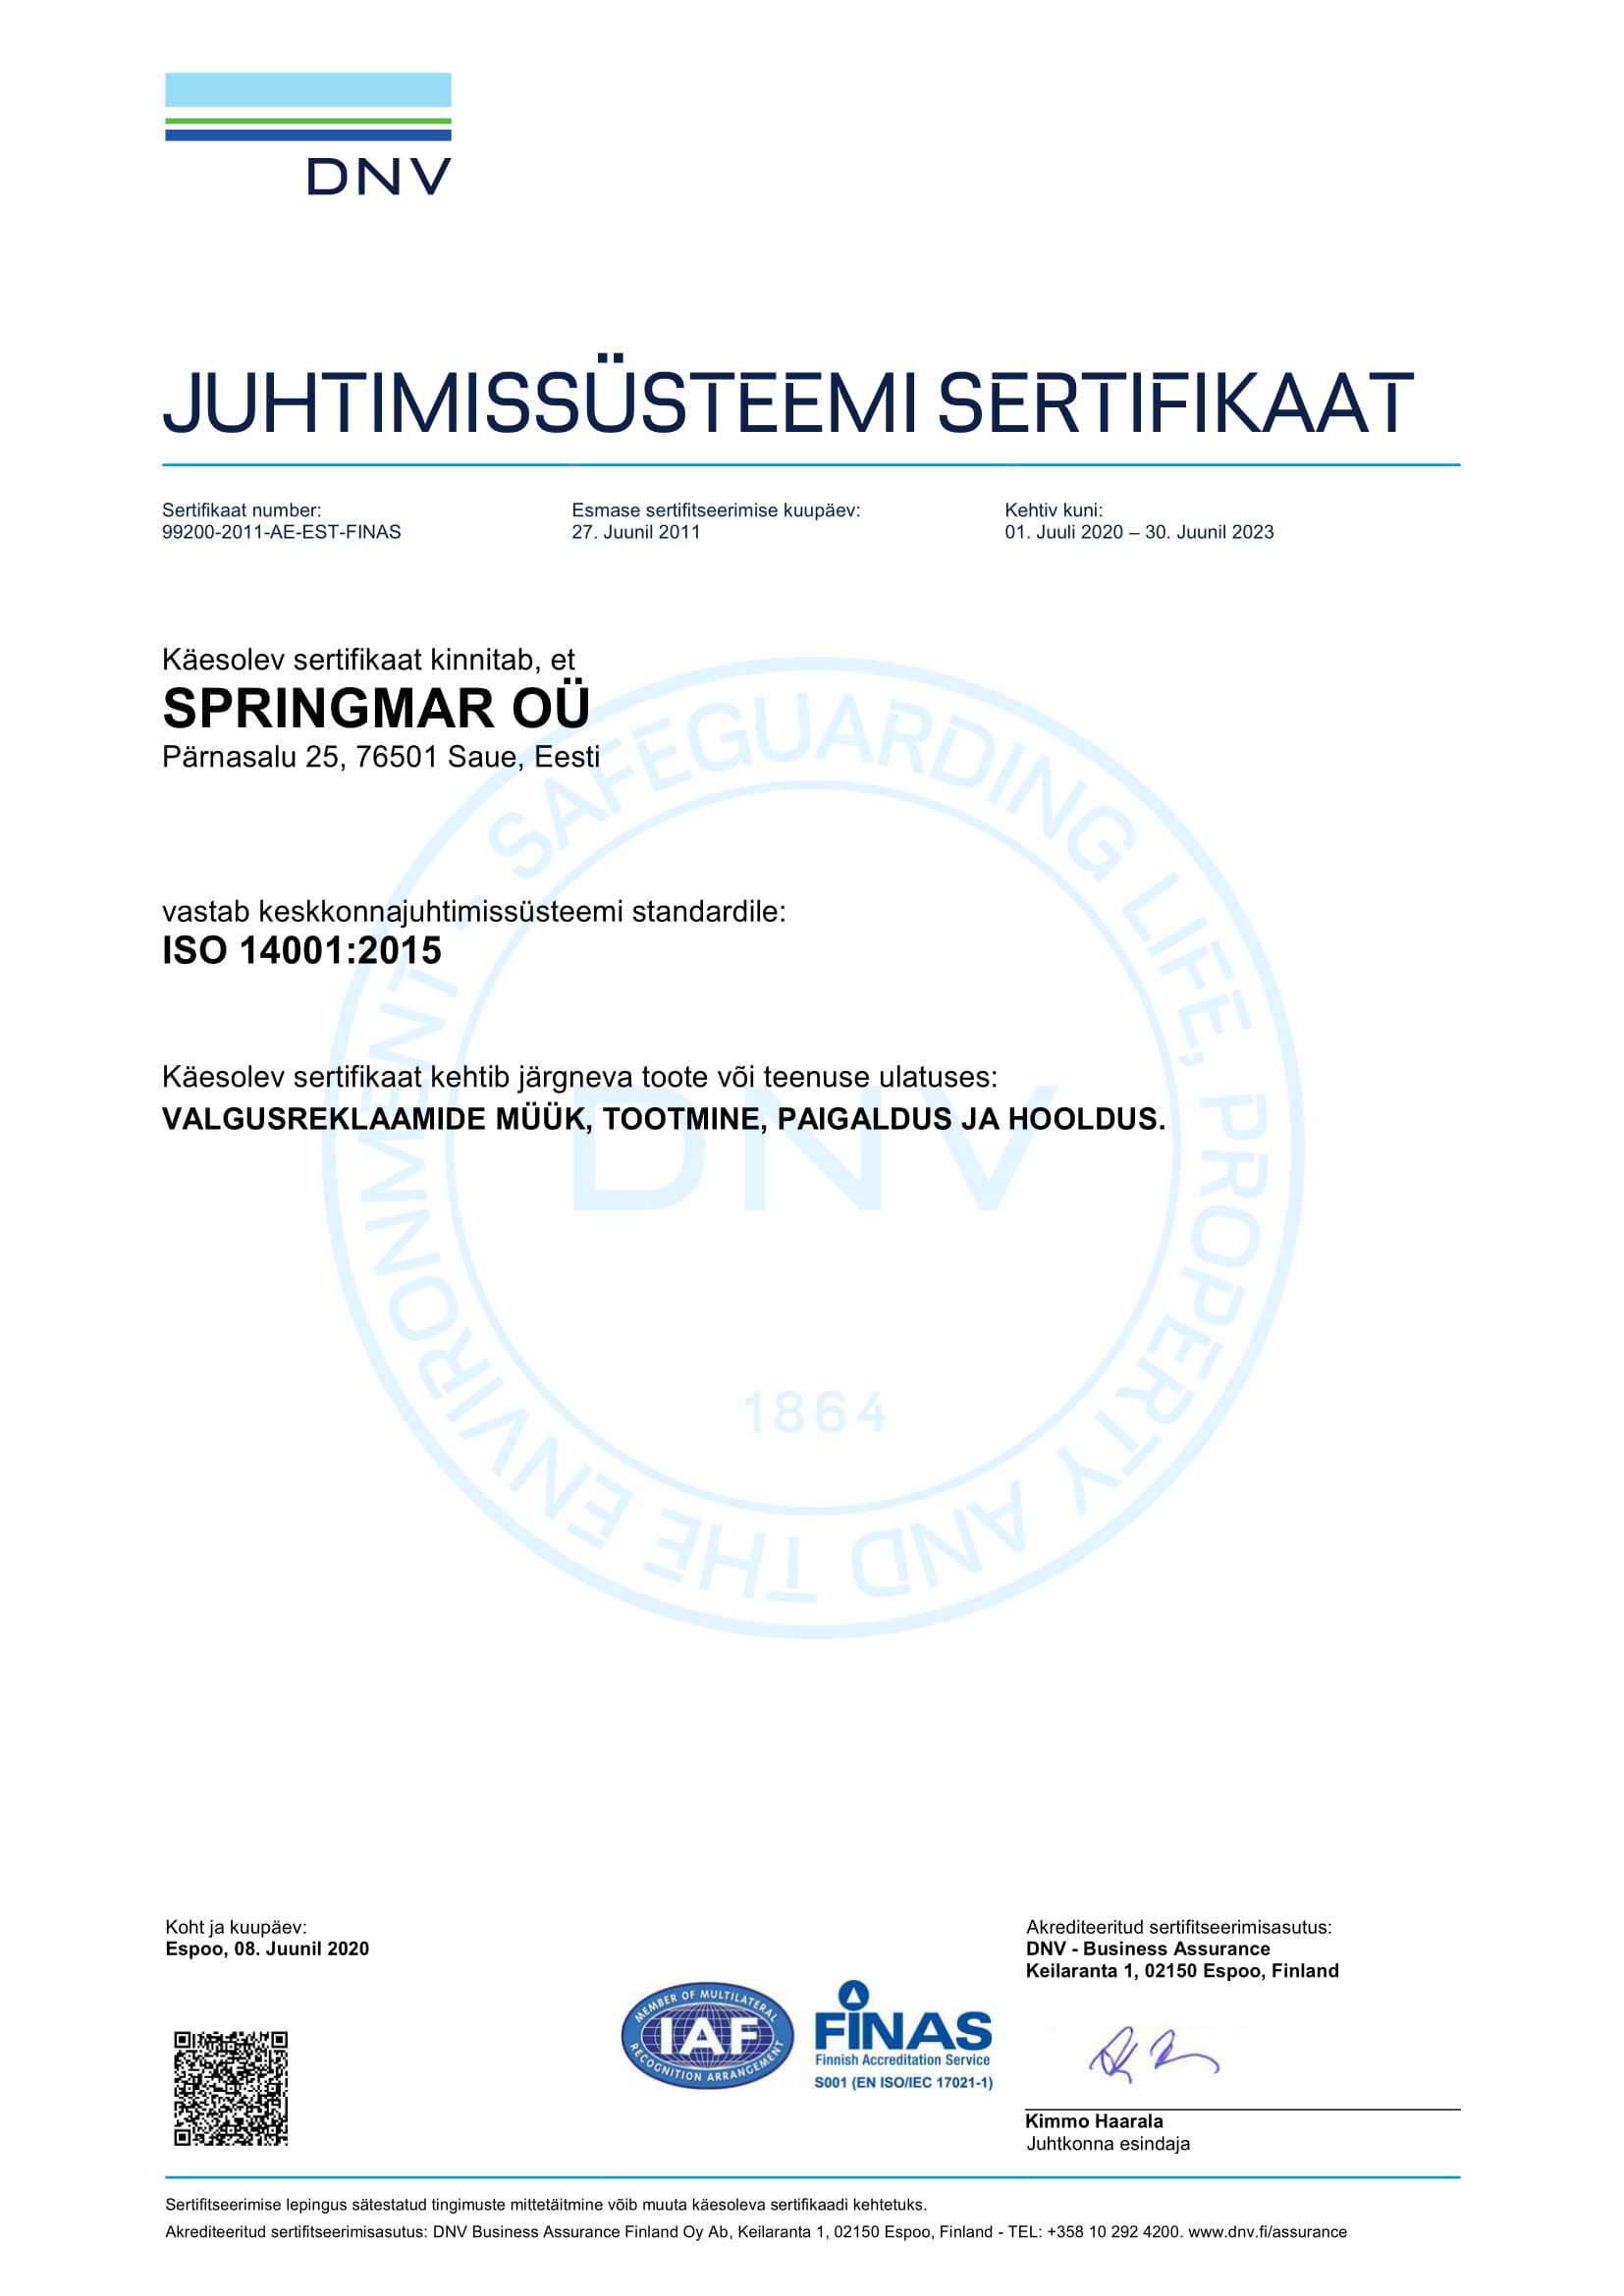 ISO 14001:2015 sertifikaat keskkonnajuhtimissüsteemile (audiitor DNV Business Assurance Finland)